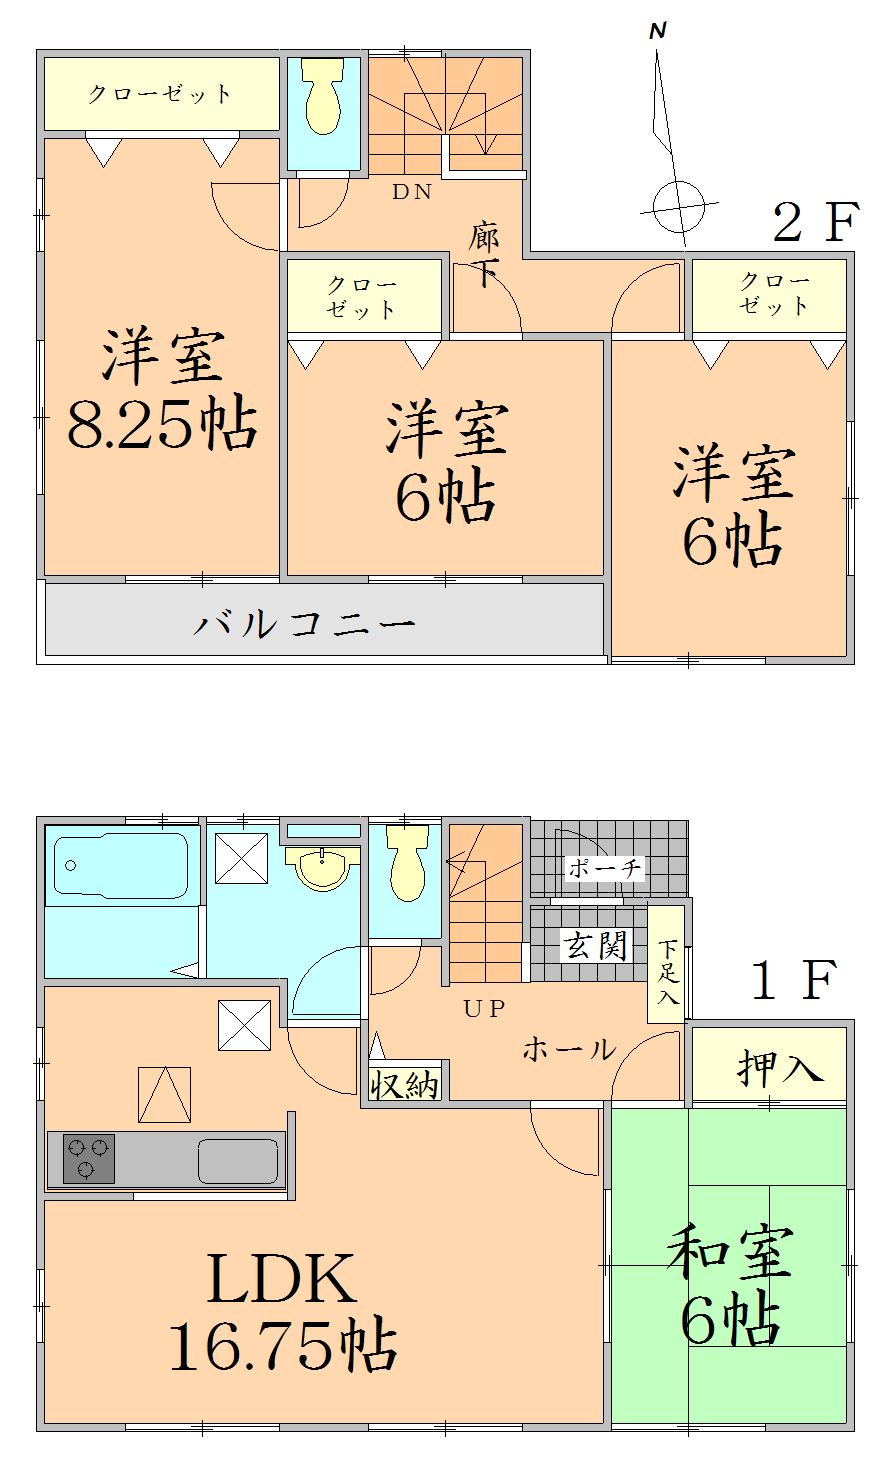 Floor plan. 23.8 million yen, 4LDK, Land area 211.12 sq m , Building area 104.33 sq m